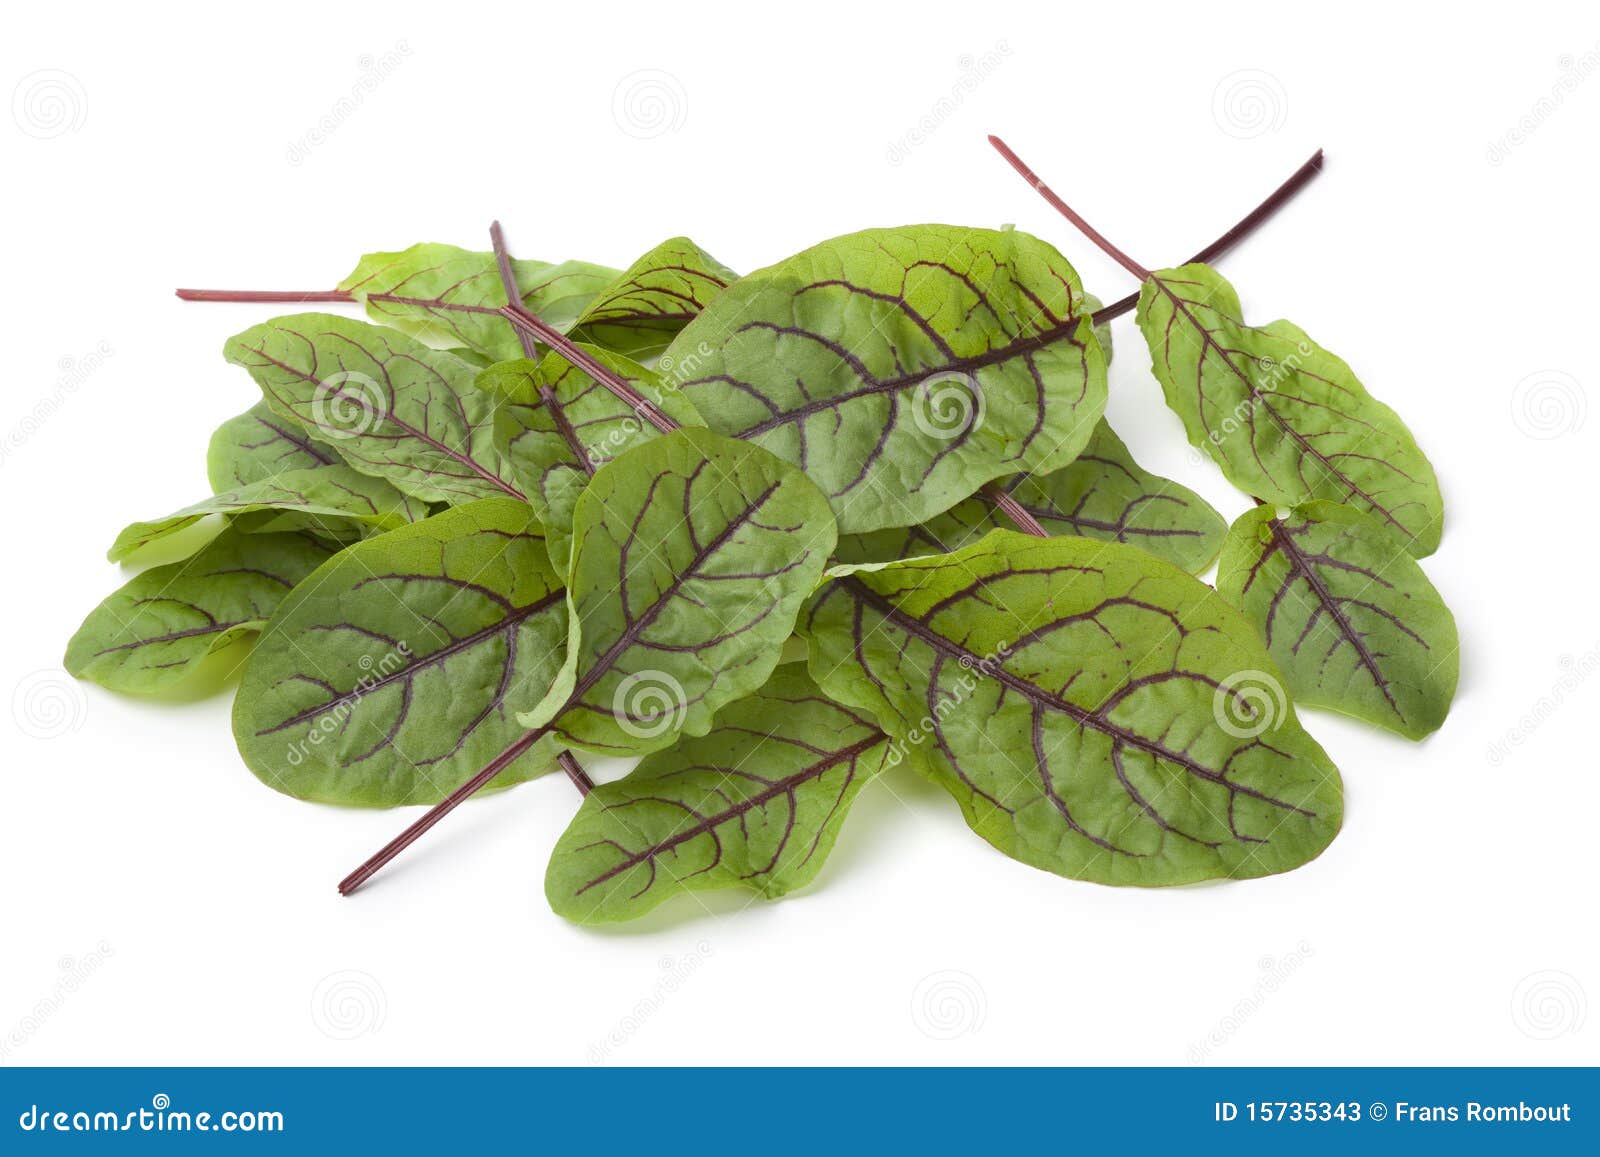 red veined sorrel leaves